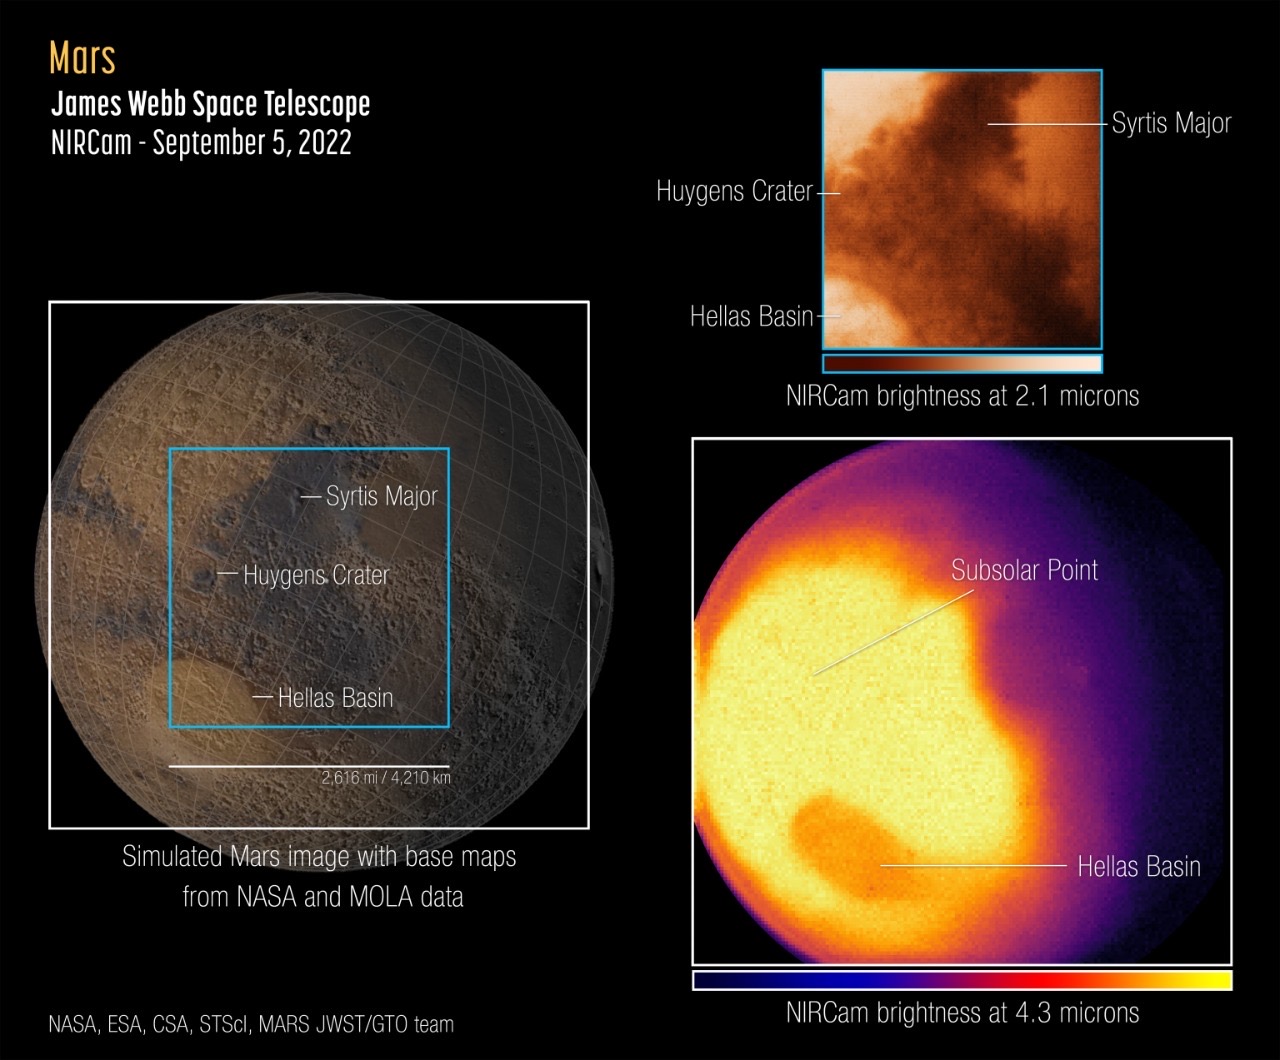 imagen de Marte tomada por el telescopio Webb